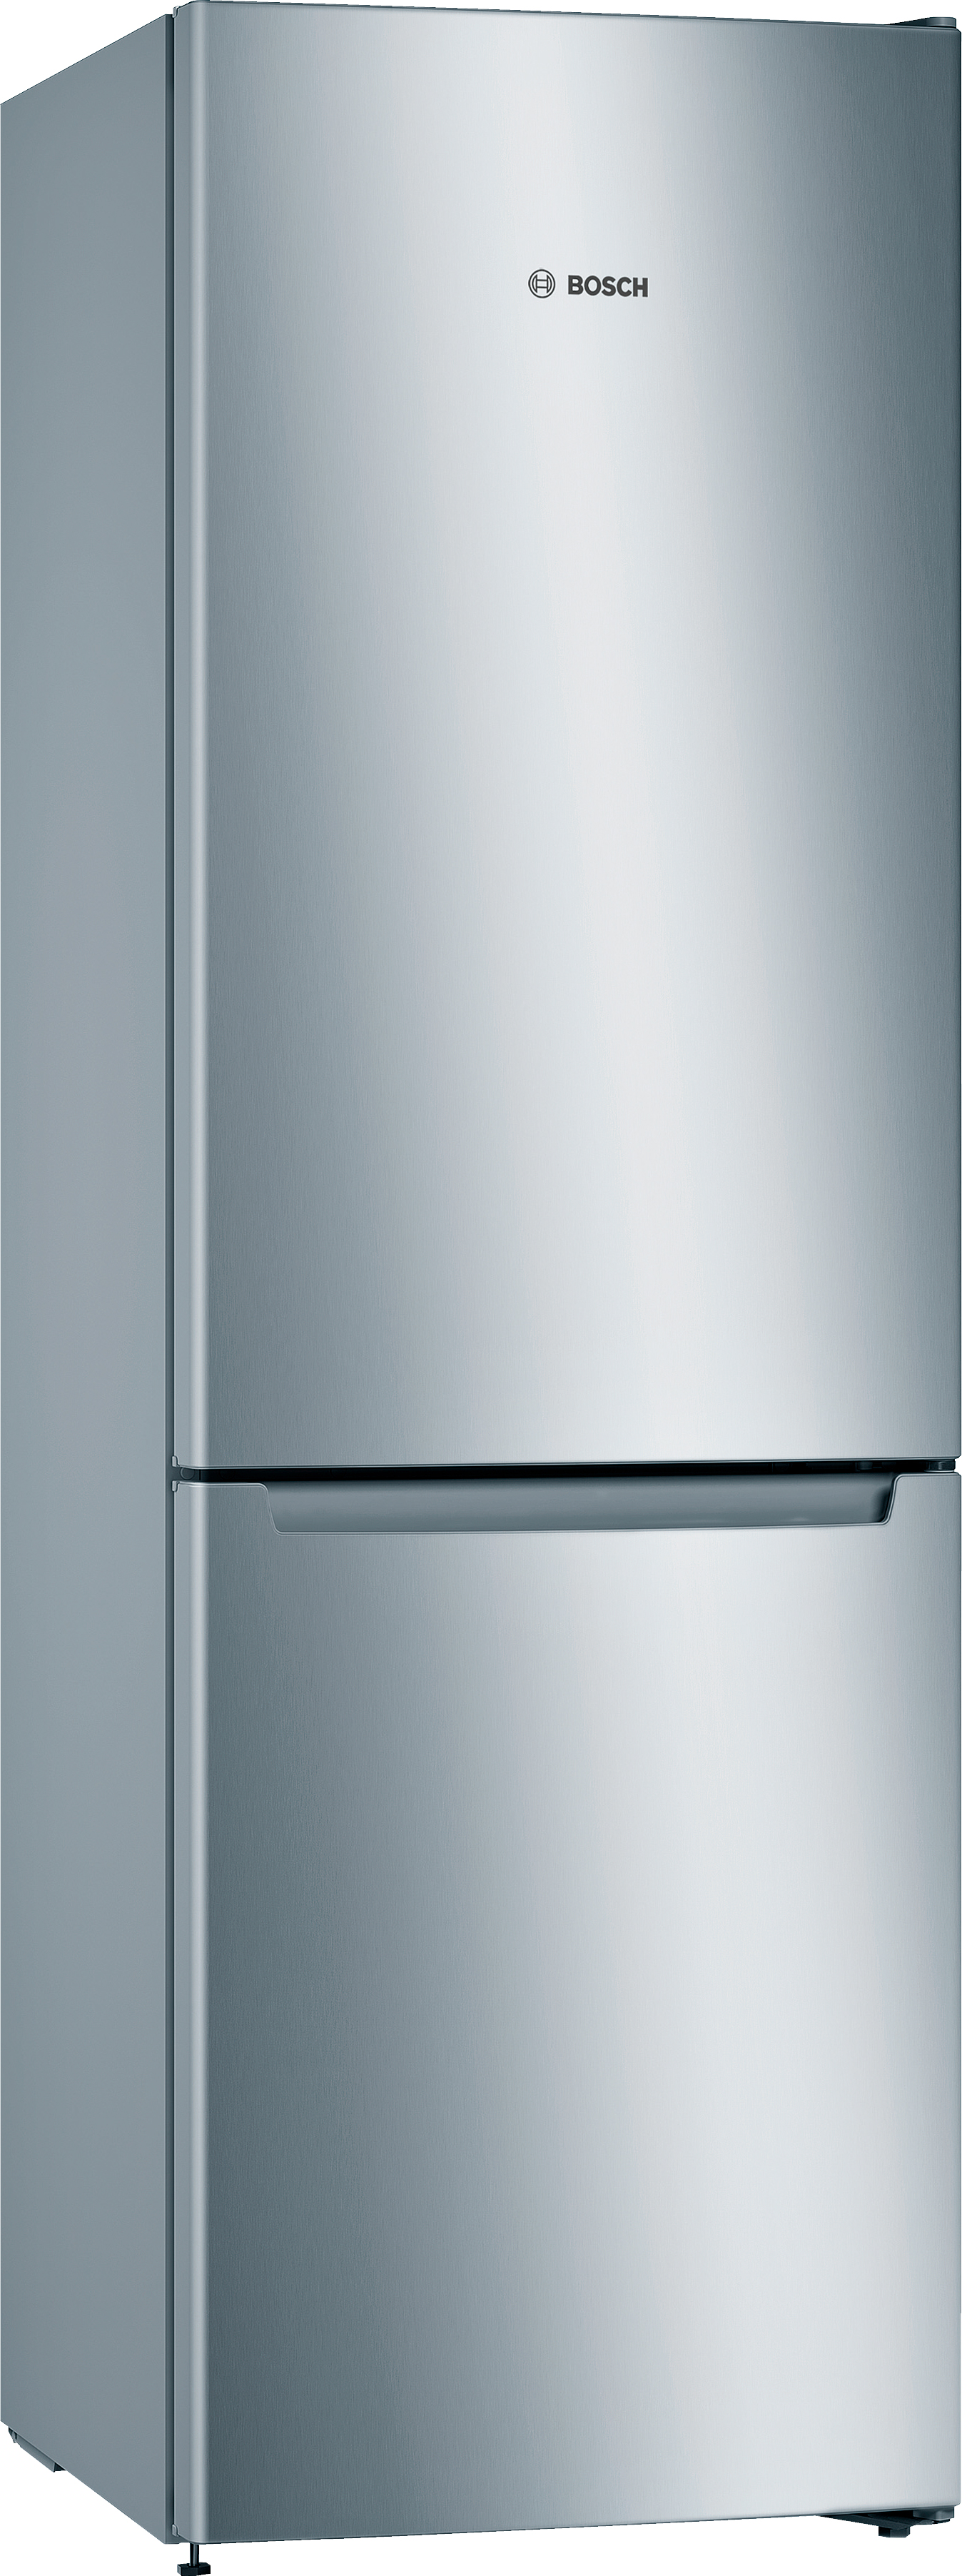 Отзывы холодильник Bosch KGN33NL206 в Украине